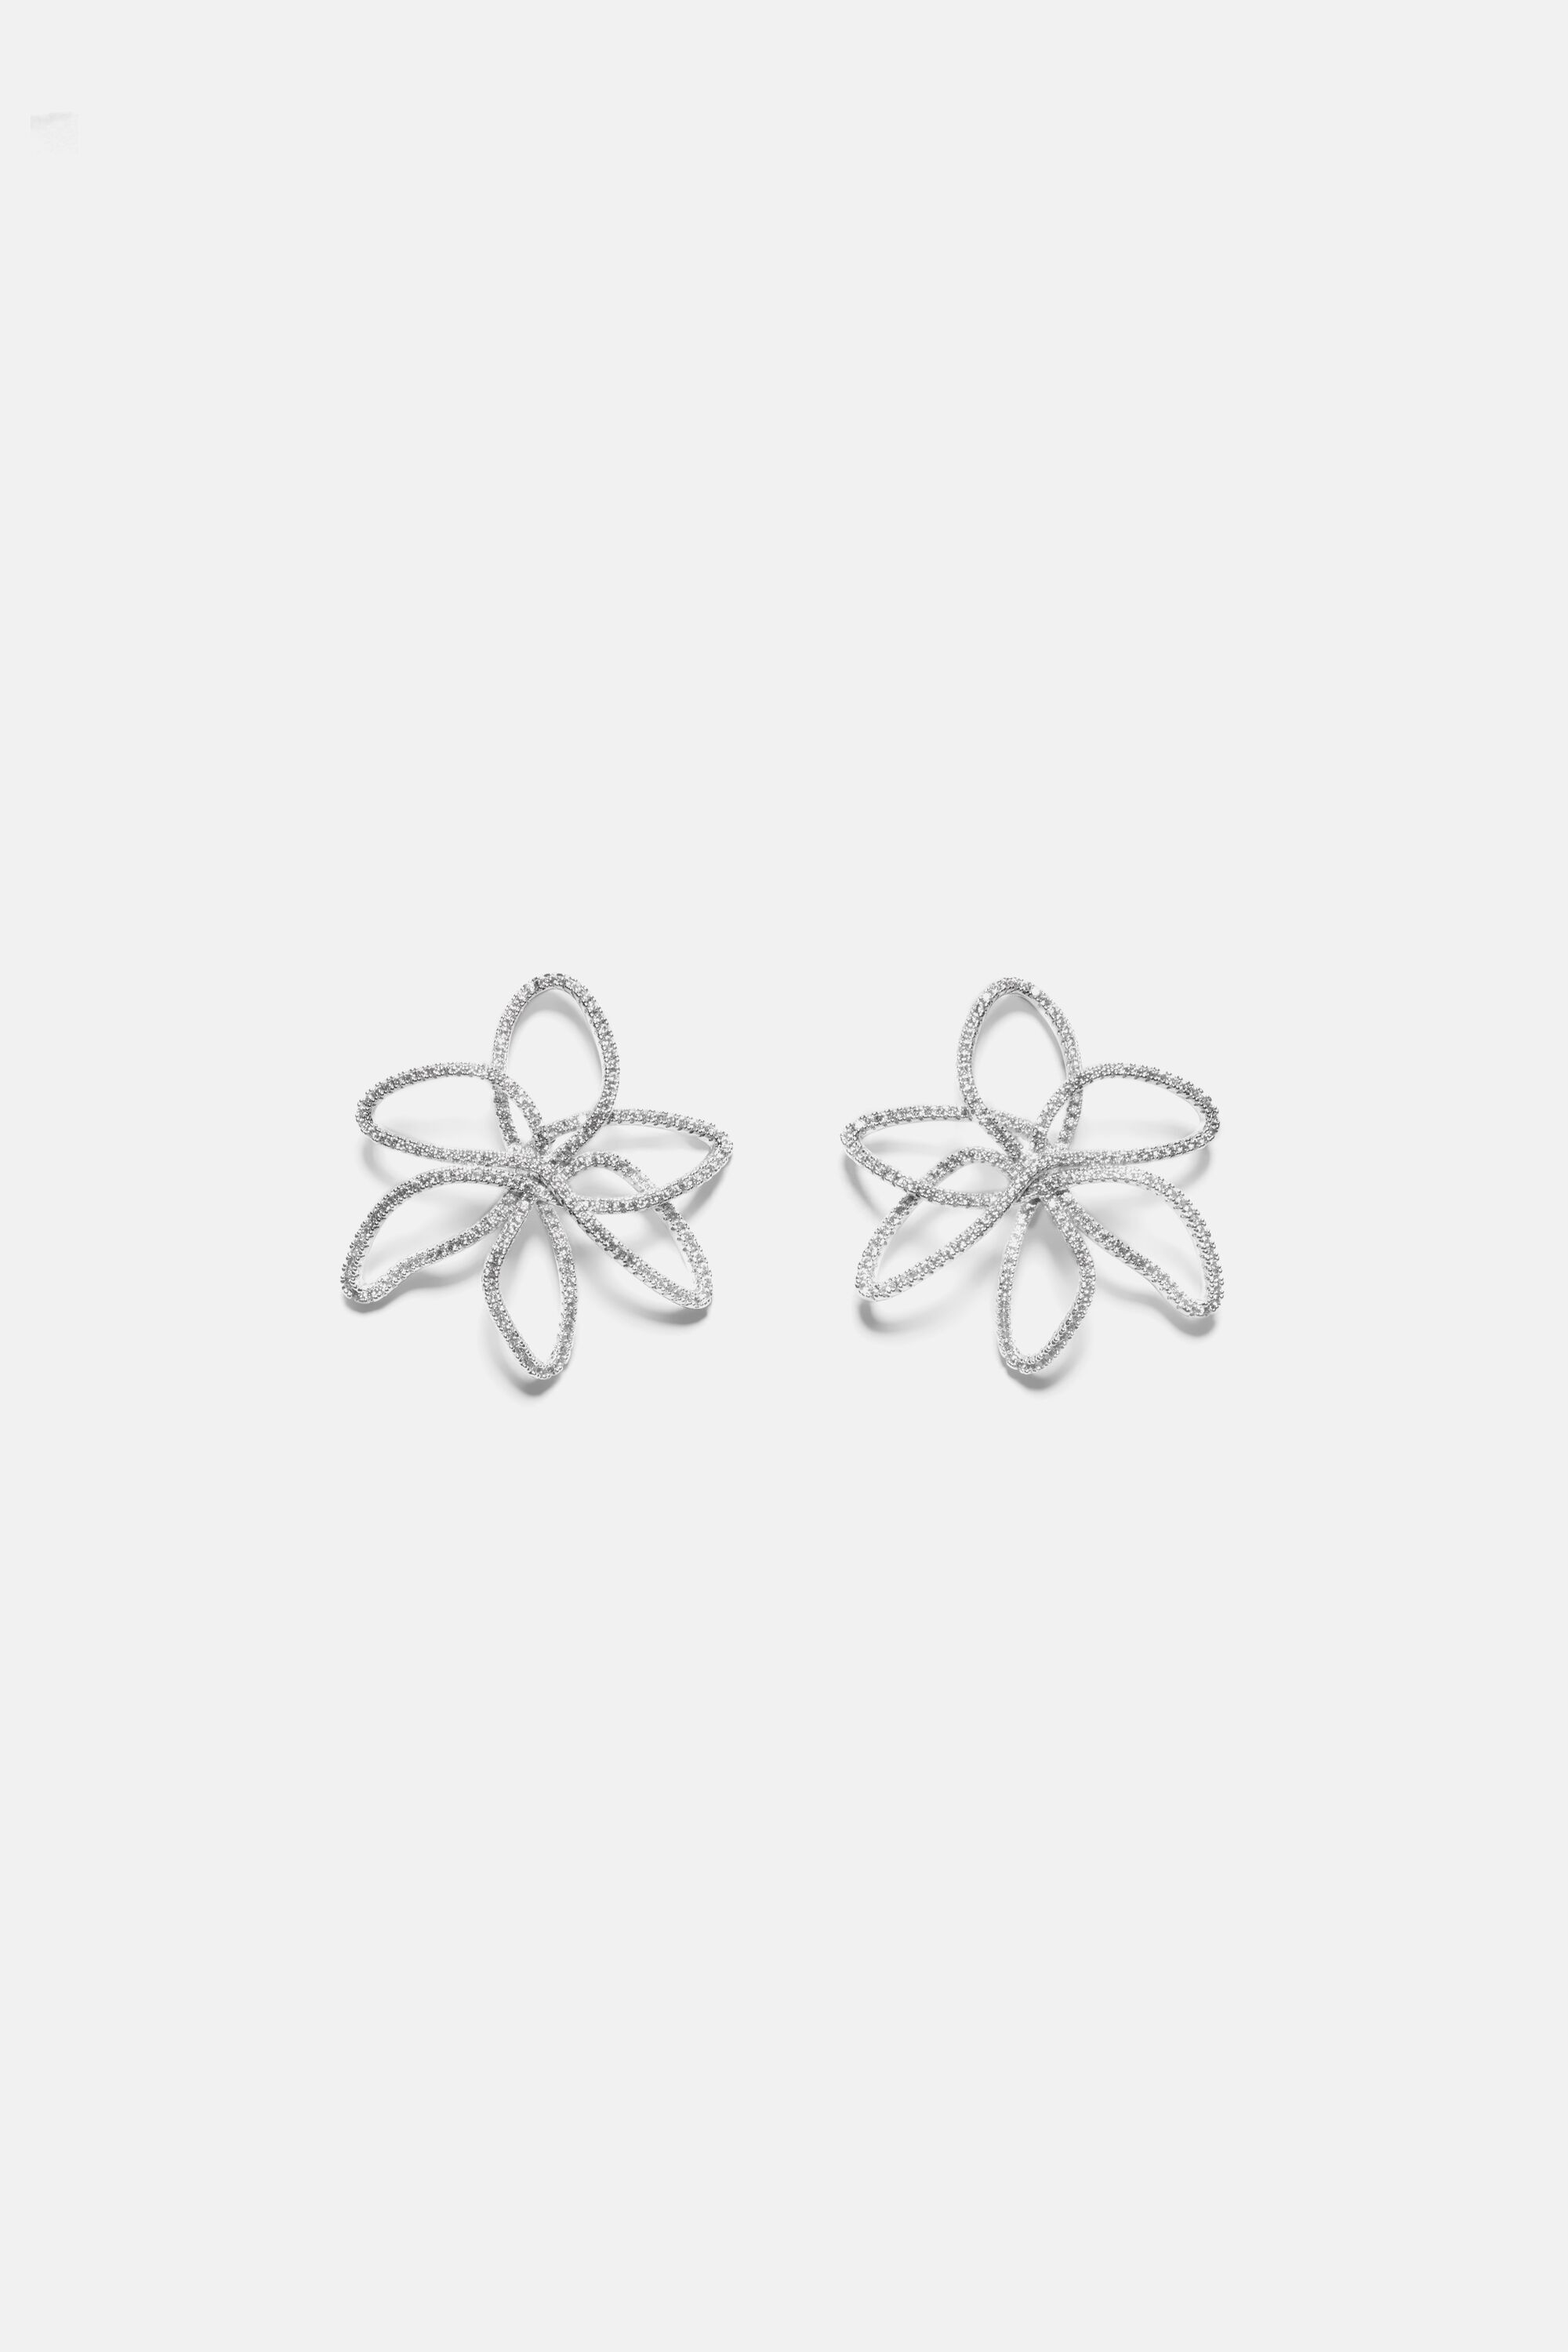 Jasmine Lines earrings